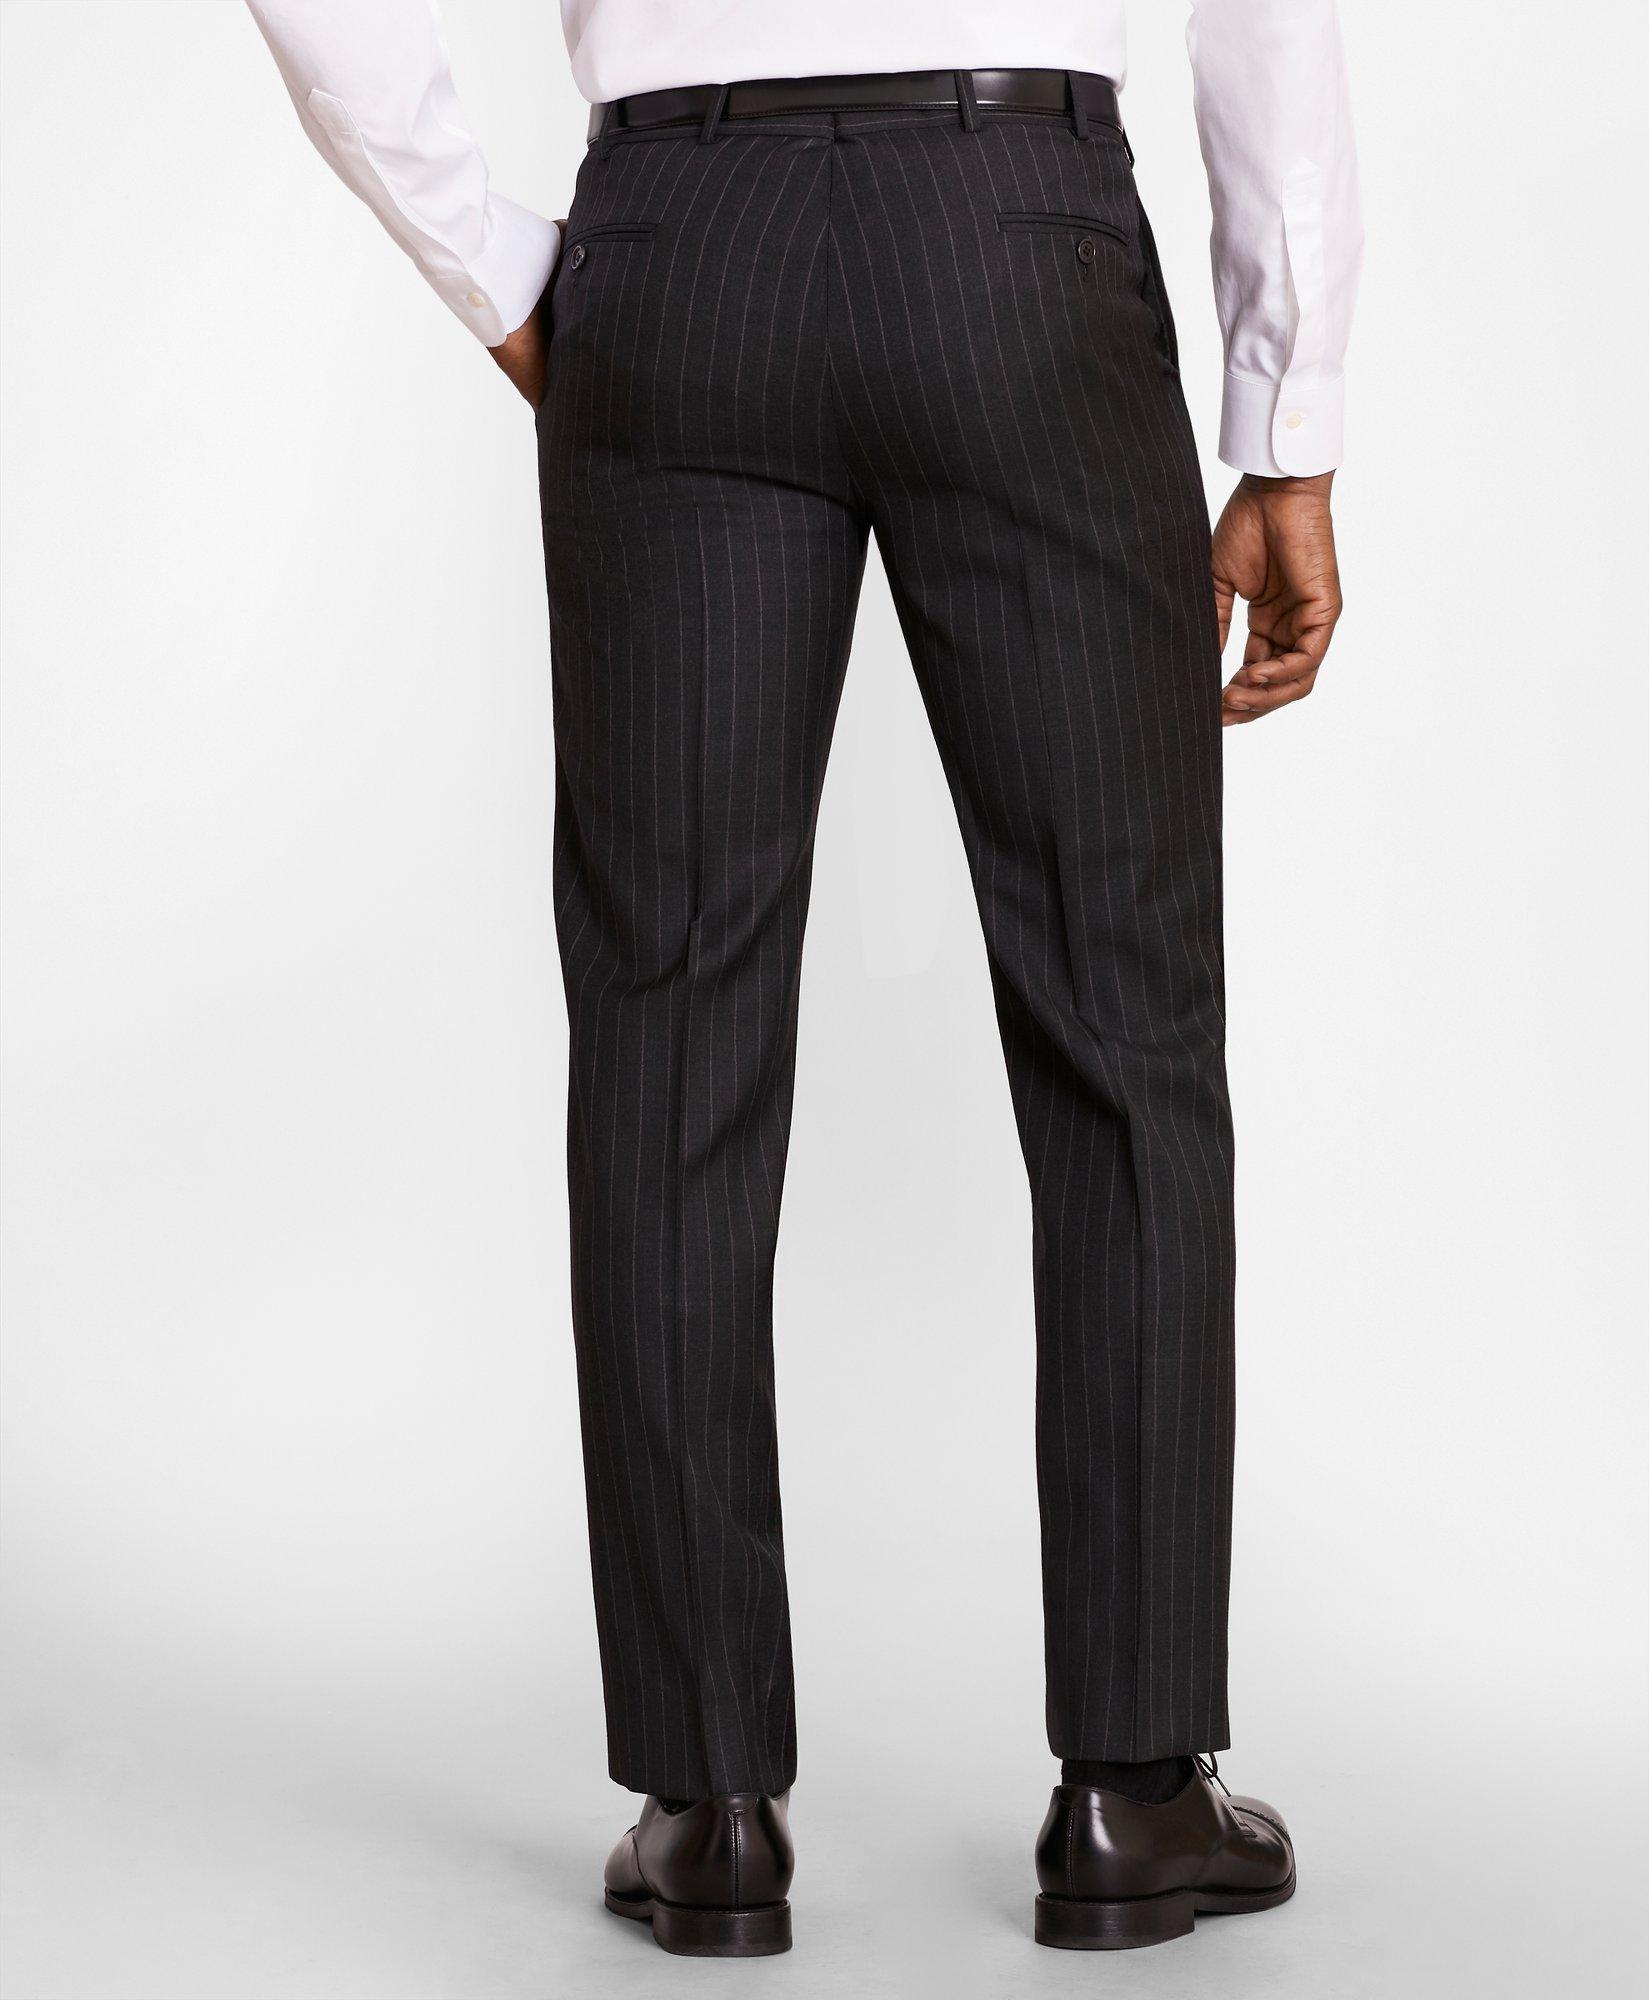 Striped suit pants